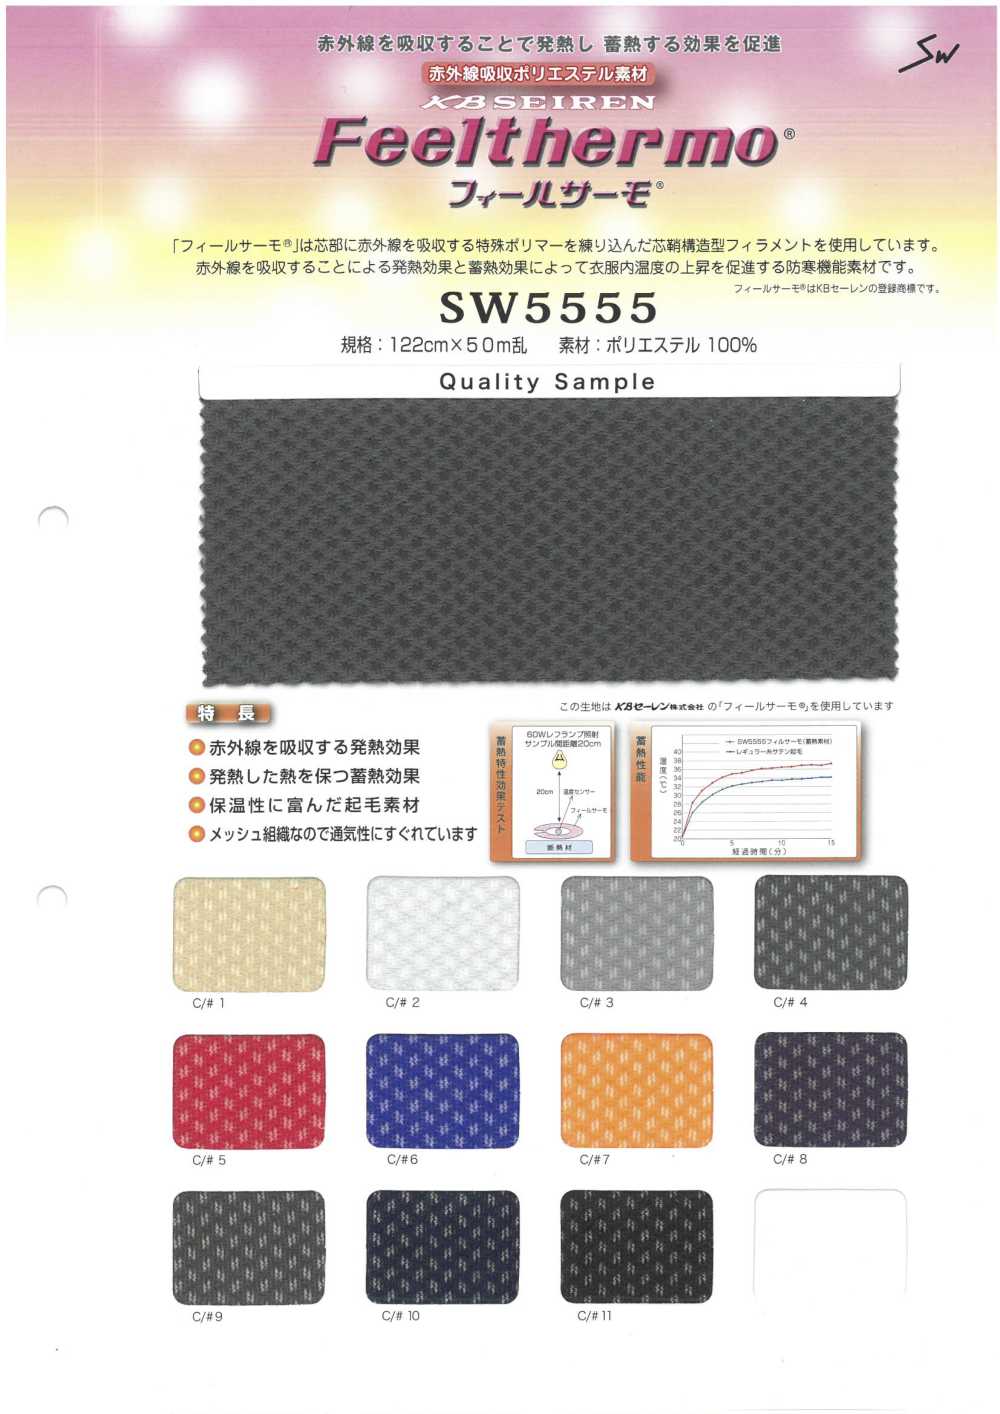 SW5555 Fühlen Sie Sich Thermofranzösisches Fuzzy-Mesh[Textilgewebe] Sanwa Fasern